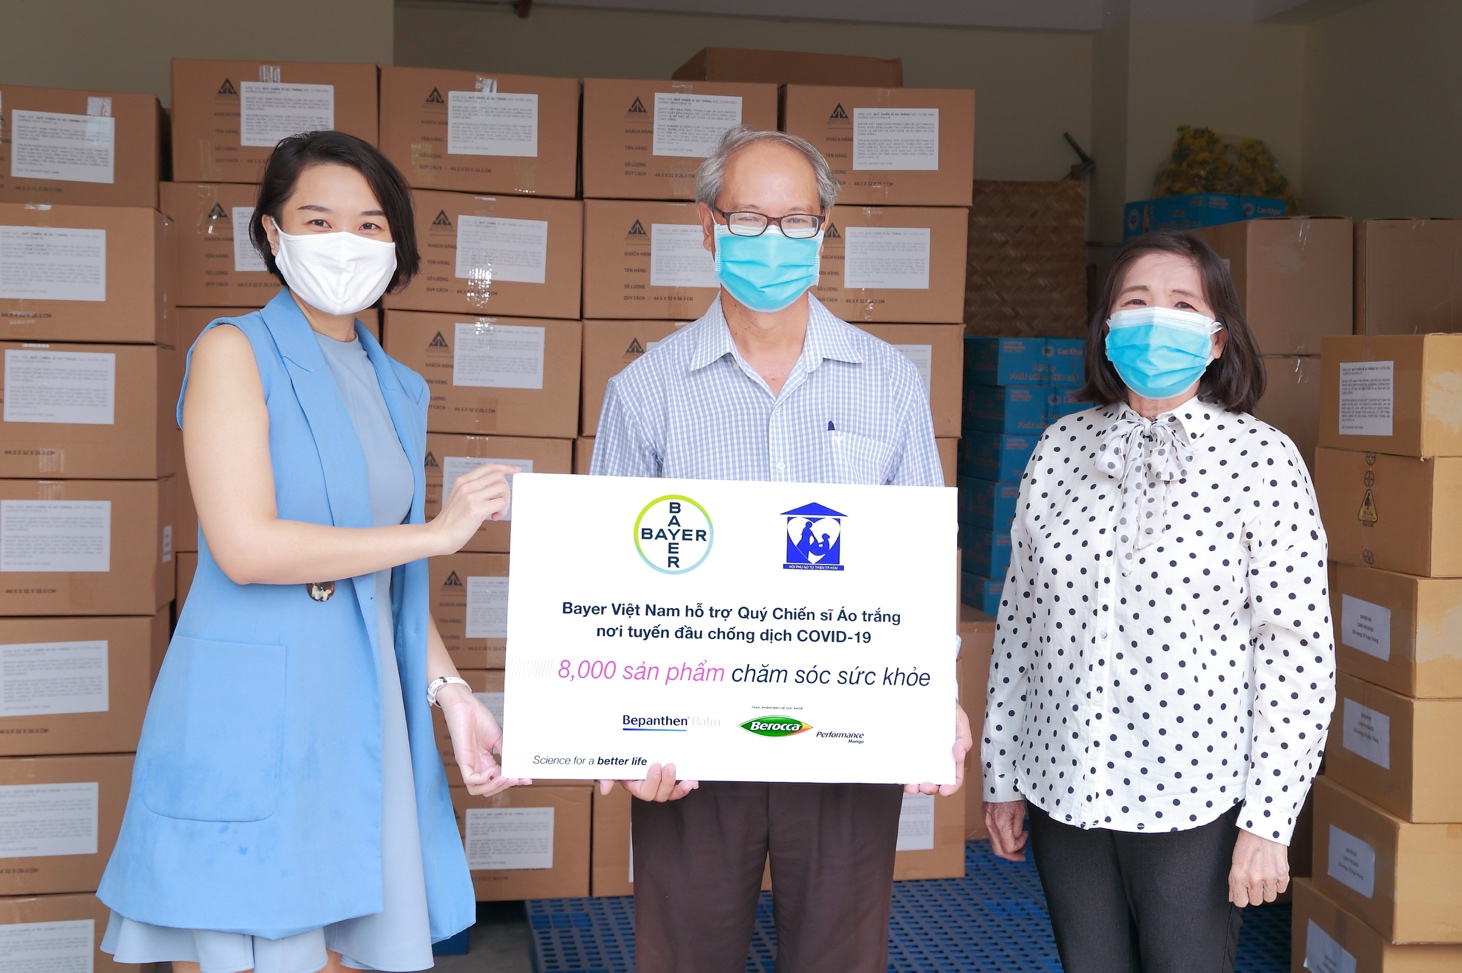 Ủy ban Mặt trận Tổ quốc Việt Nam tại TPHCM tiếp nhận 8.000 sản phẩm chăm sóc sức khỏe từ Bayer Việt Nam và Hội Phụ nữ Từ thiện TPHCM - Ảnh: Minh Phú